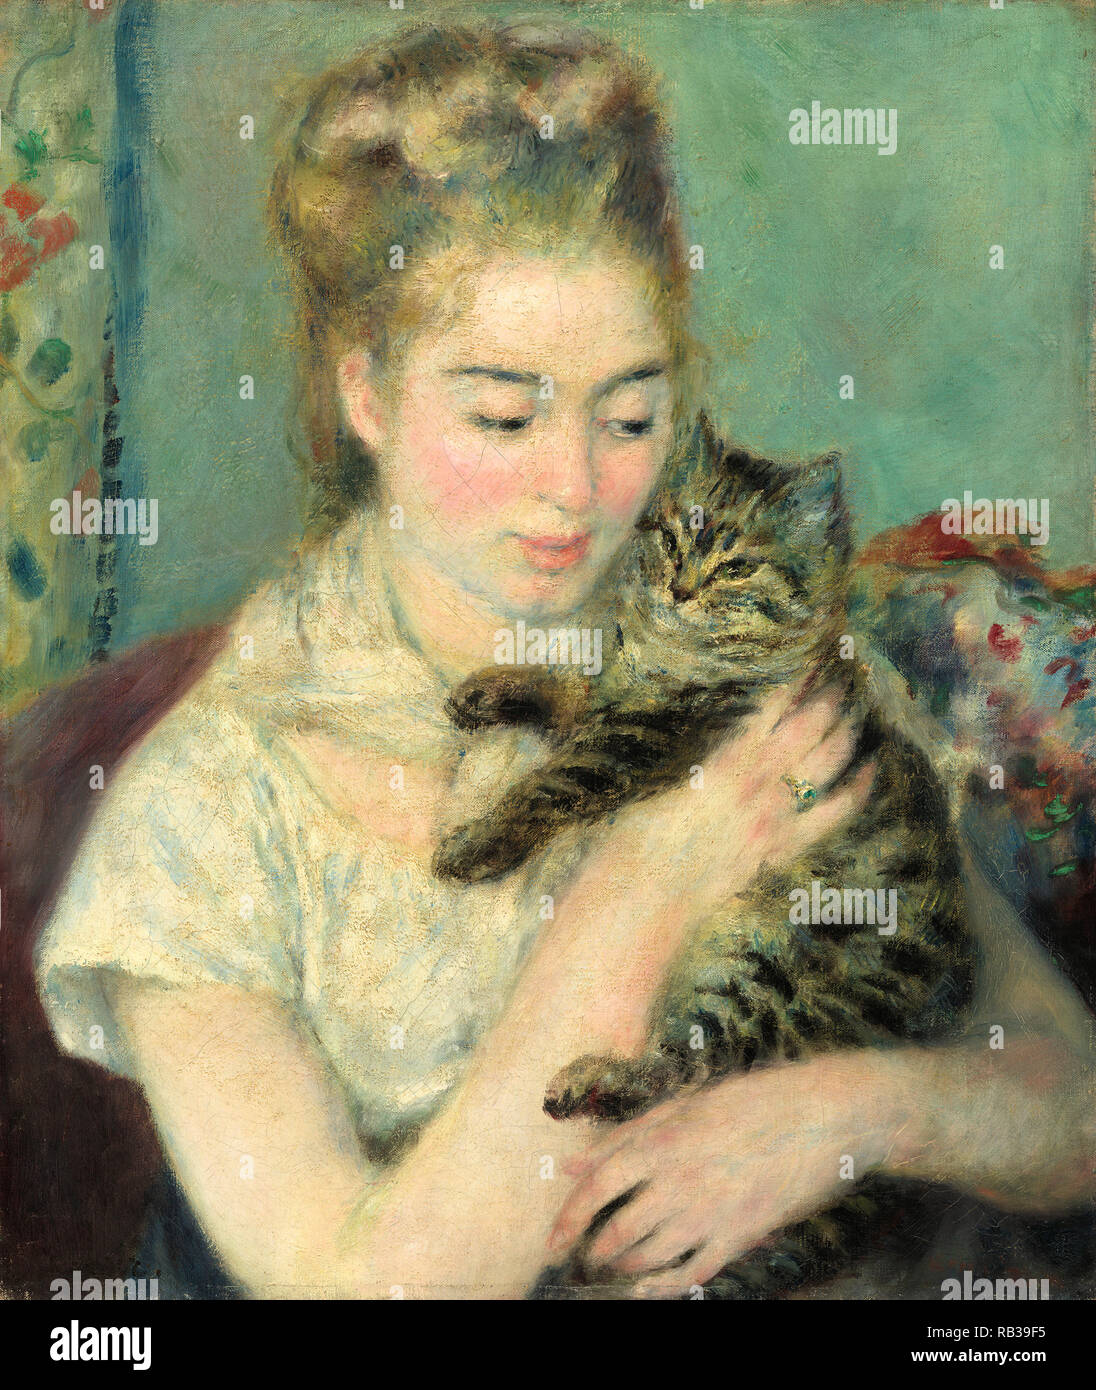 Una donna con il CAT. Data: c. 1875. Dimensioni: complessivo: 56 x 46,4 cm (22 1/16 x 18 1/4 in.) incorniciato: 85,1 x 75,9 x 7,6 cm (33 1/2 x 29 7/8 x 3 in.). Medium: olio su tela. Museo: National Gallery of Art di Washington DC. Autore: Auguste Renoir. Renoir, Pierre-Auguste. Foto Stock